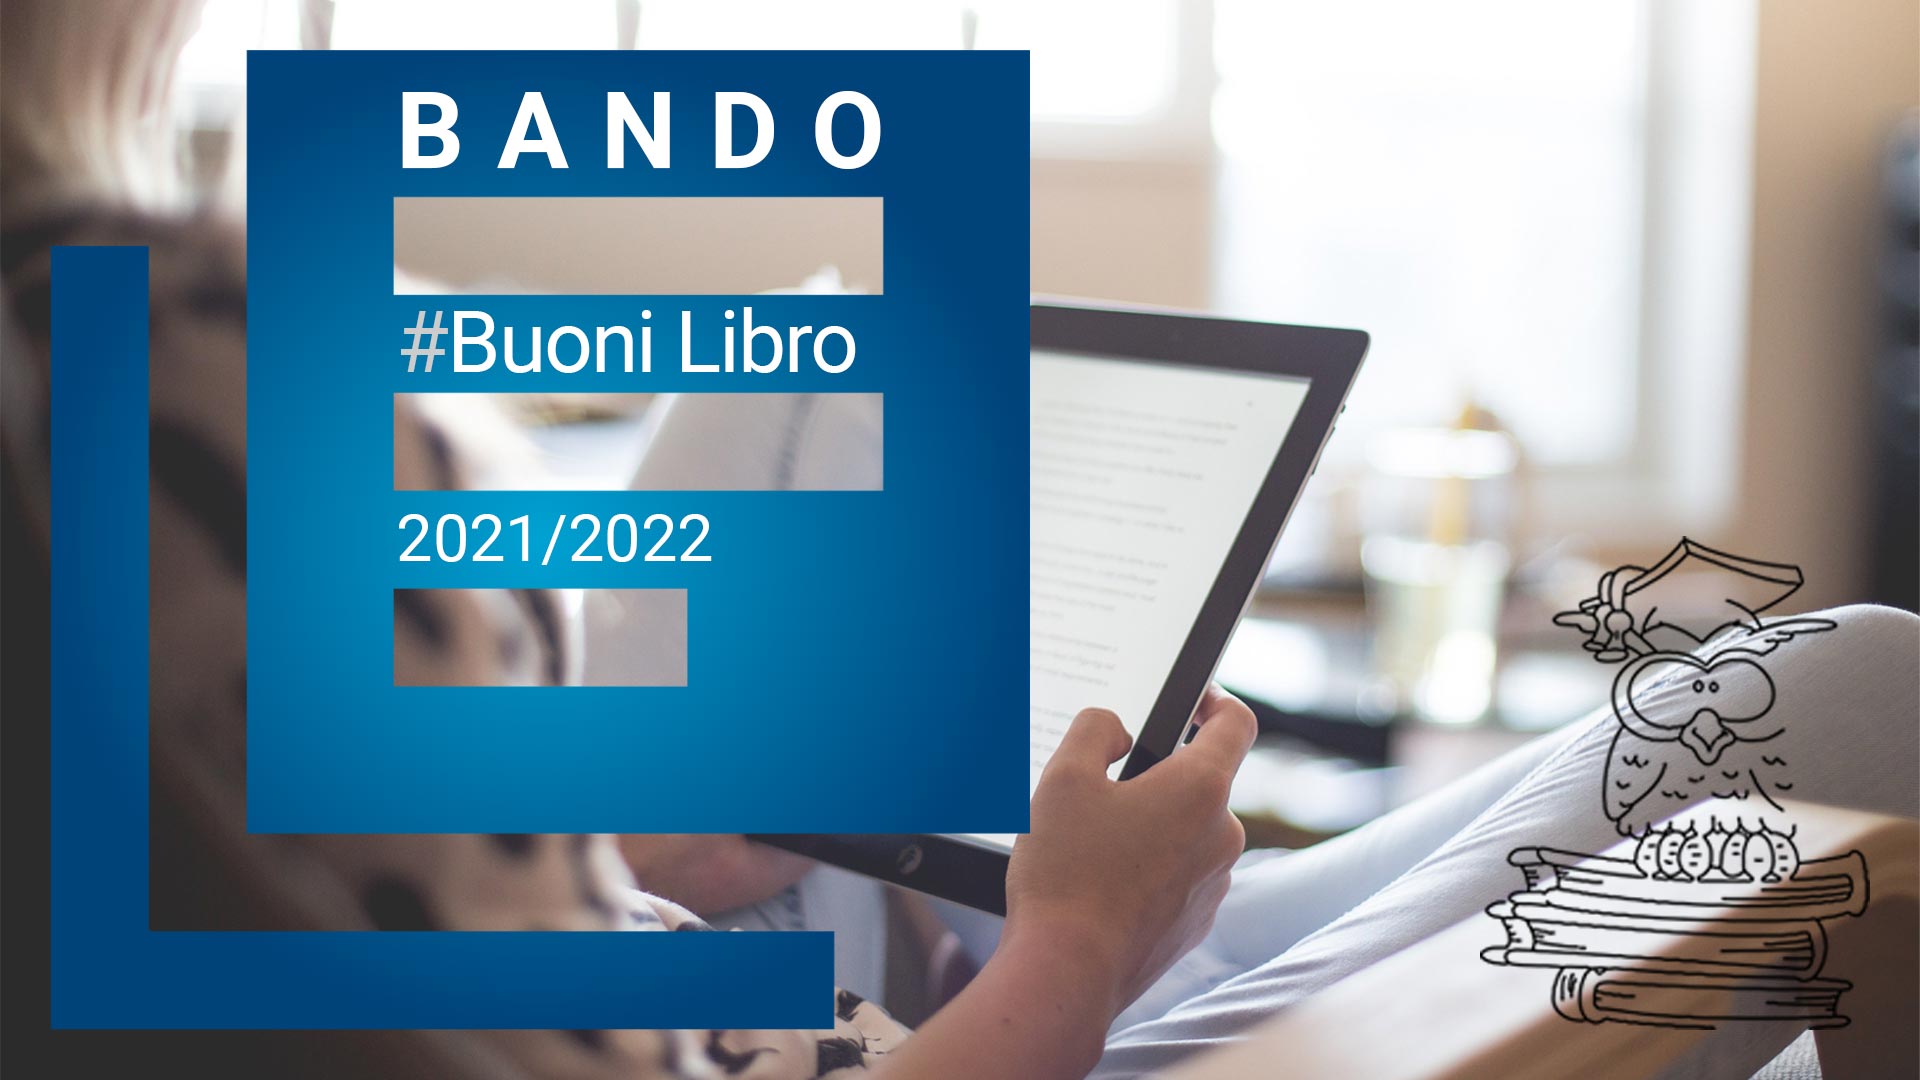 On line il Bando Buoni Libro a.a. 2021/2022